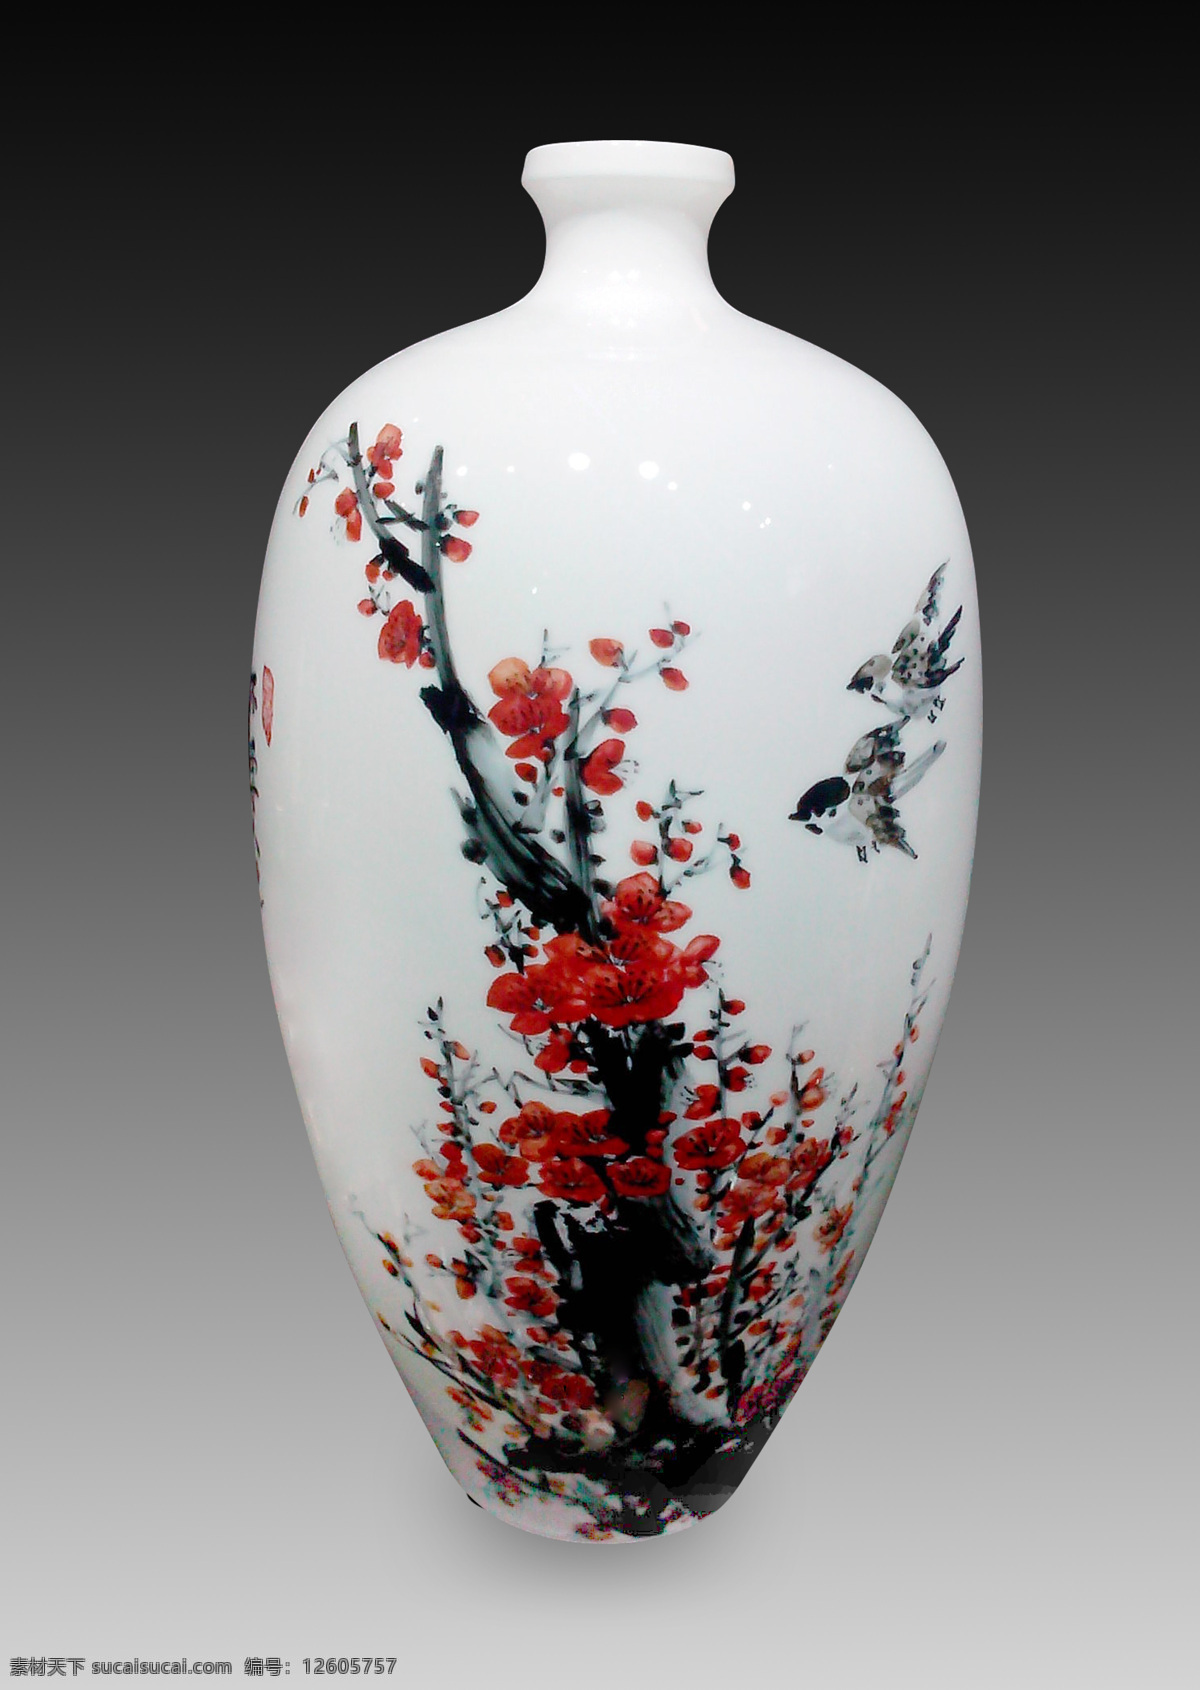 报春图 花瓶 瓷器 刘仕园 釉下五彩瓷 中国画 传统文化 文化艺术